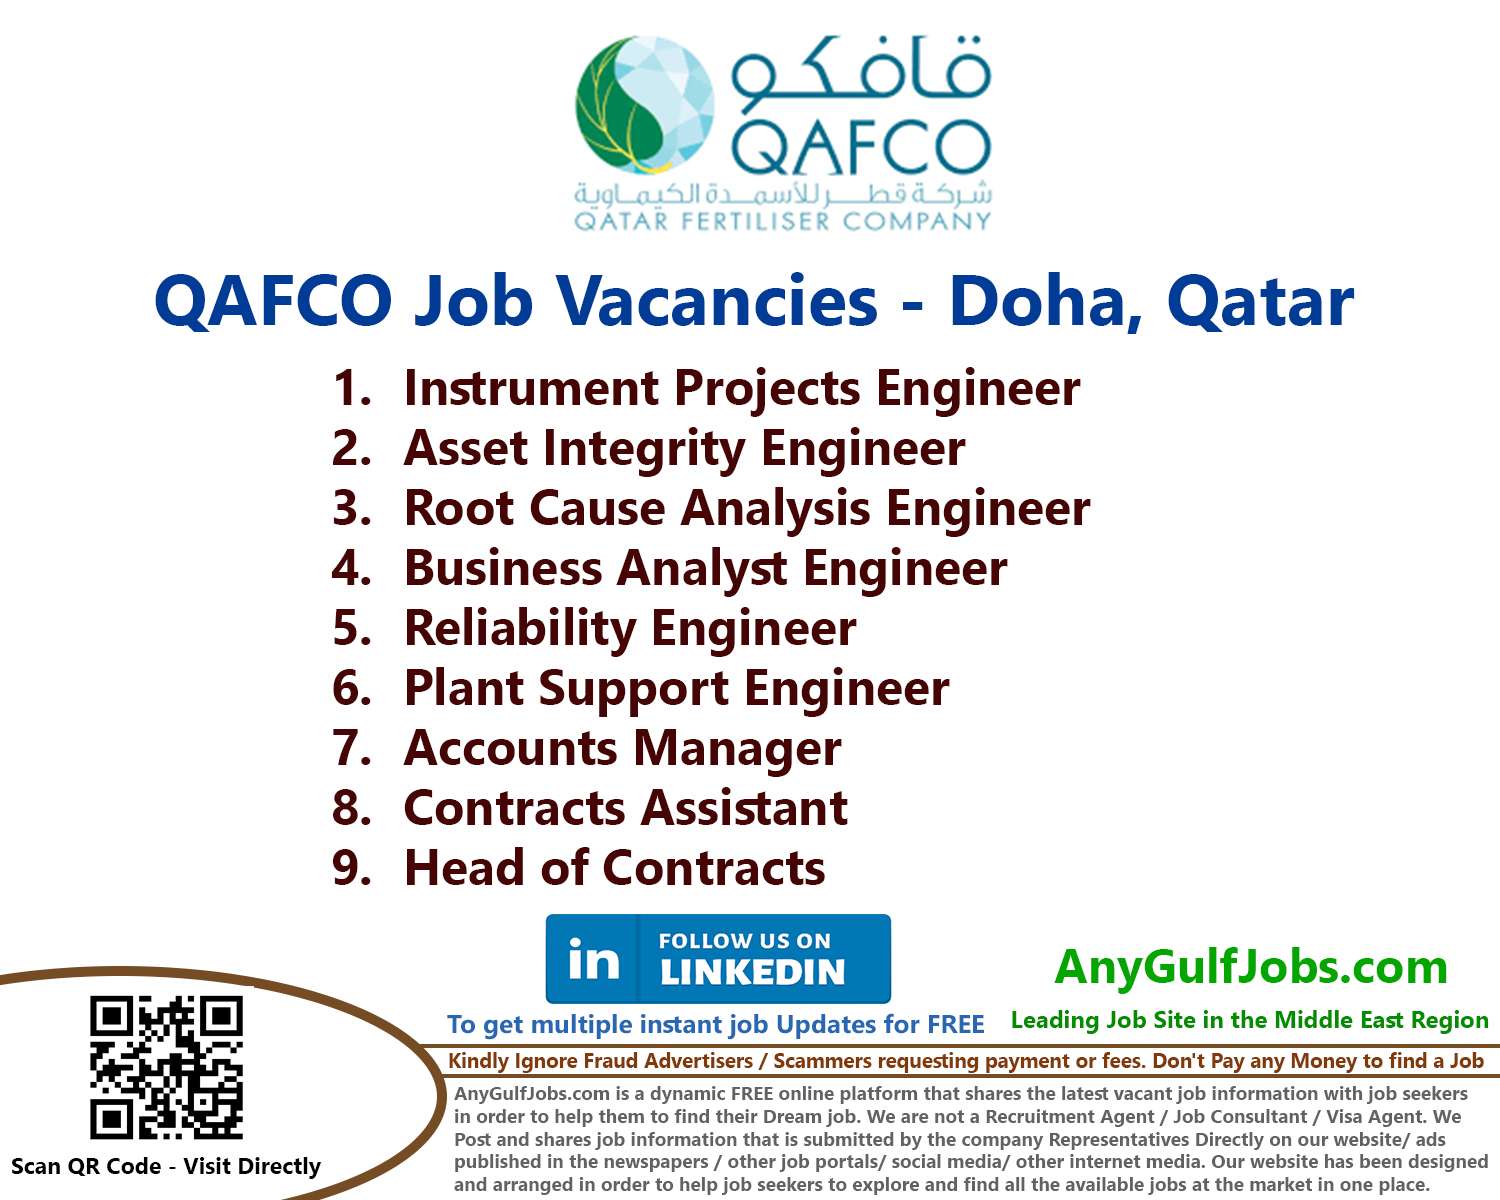 QAFCO Job Vacancies - Doha, Qatar